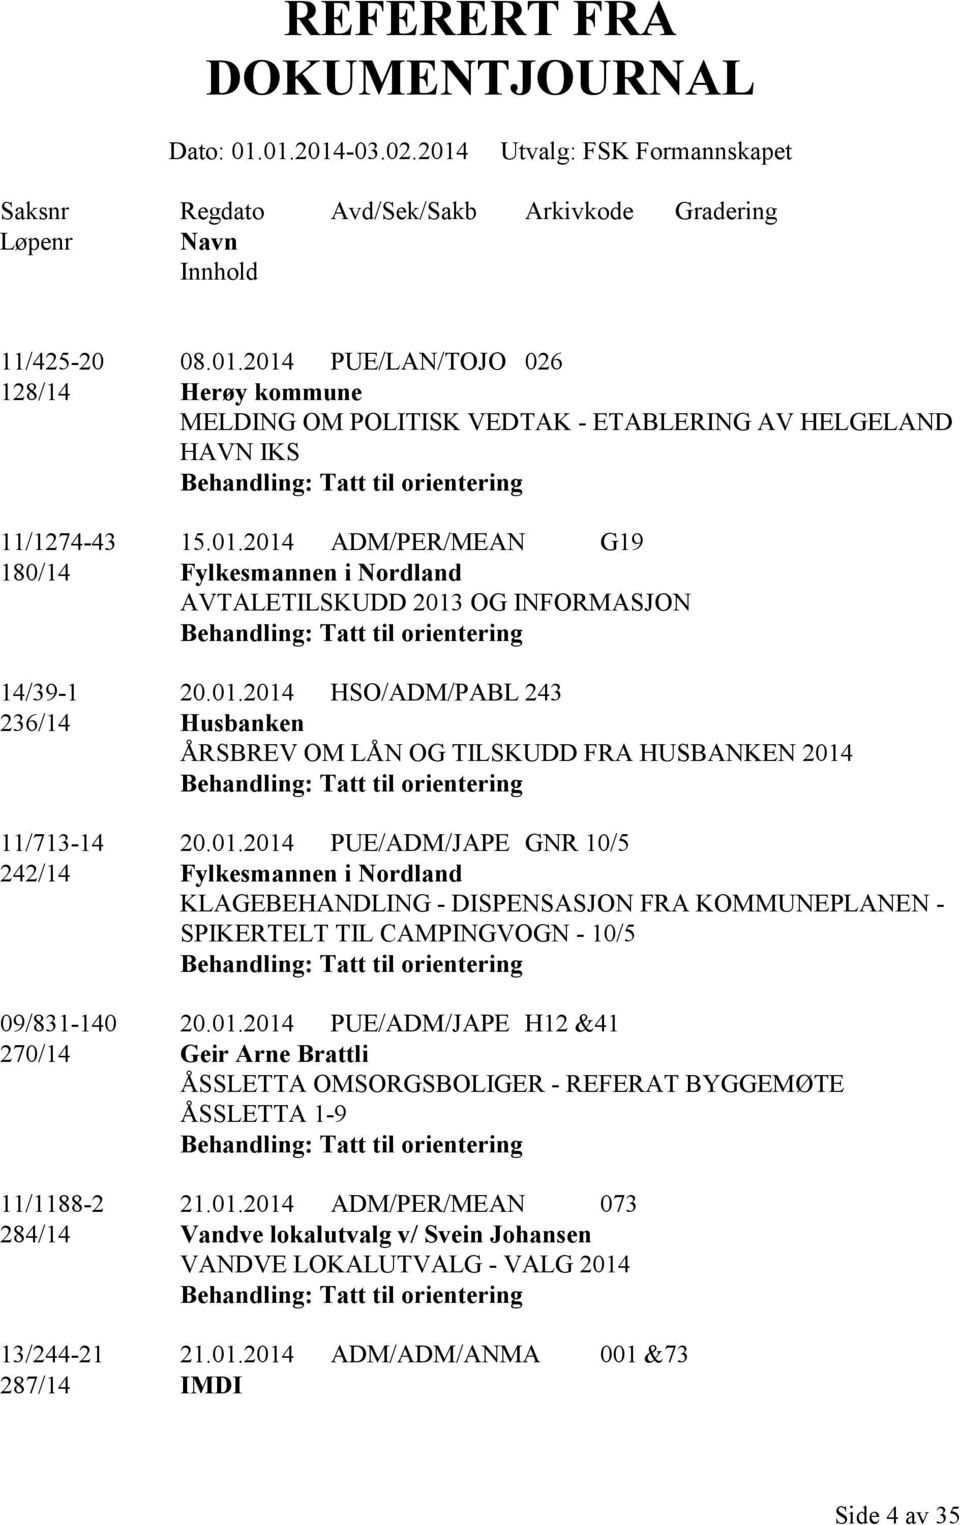 01.2014 PUE/ADM/JAPE GNR 10/5 242/14 Fylkesmannen i Nordland KLAGEBEHANDLING - DISPENSASJON FRA KOMMUNEPLANEN - SPIKERTELT TIL CAMPINGVOGN - 10/5 Tatt til orientering 09/831-140 20.01.2014 PUE/ADM/JAPE H12 &41 270/14 Geir Arne Brattli ÅSSLETTA OMSORGSBOLIGER - REFERAT BYGGEMØTE ÅSSLETTA 1-9 Tatt til orientering 11/1188-2 21.